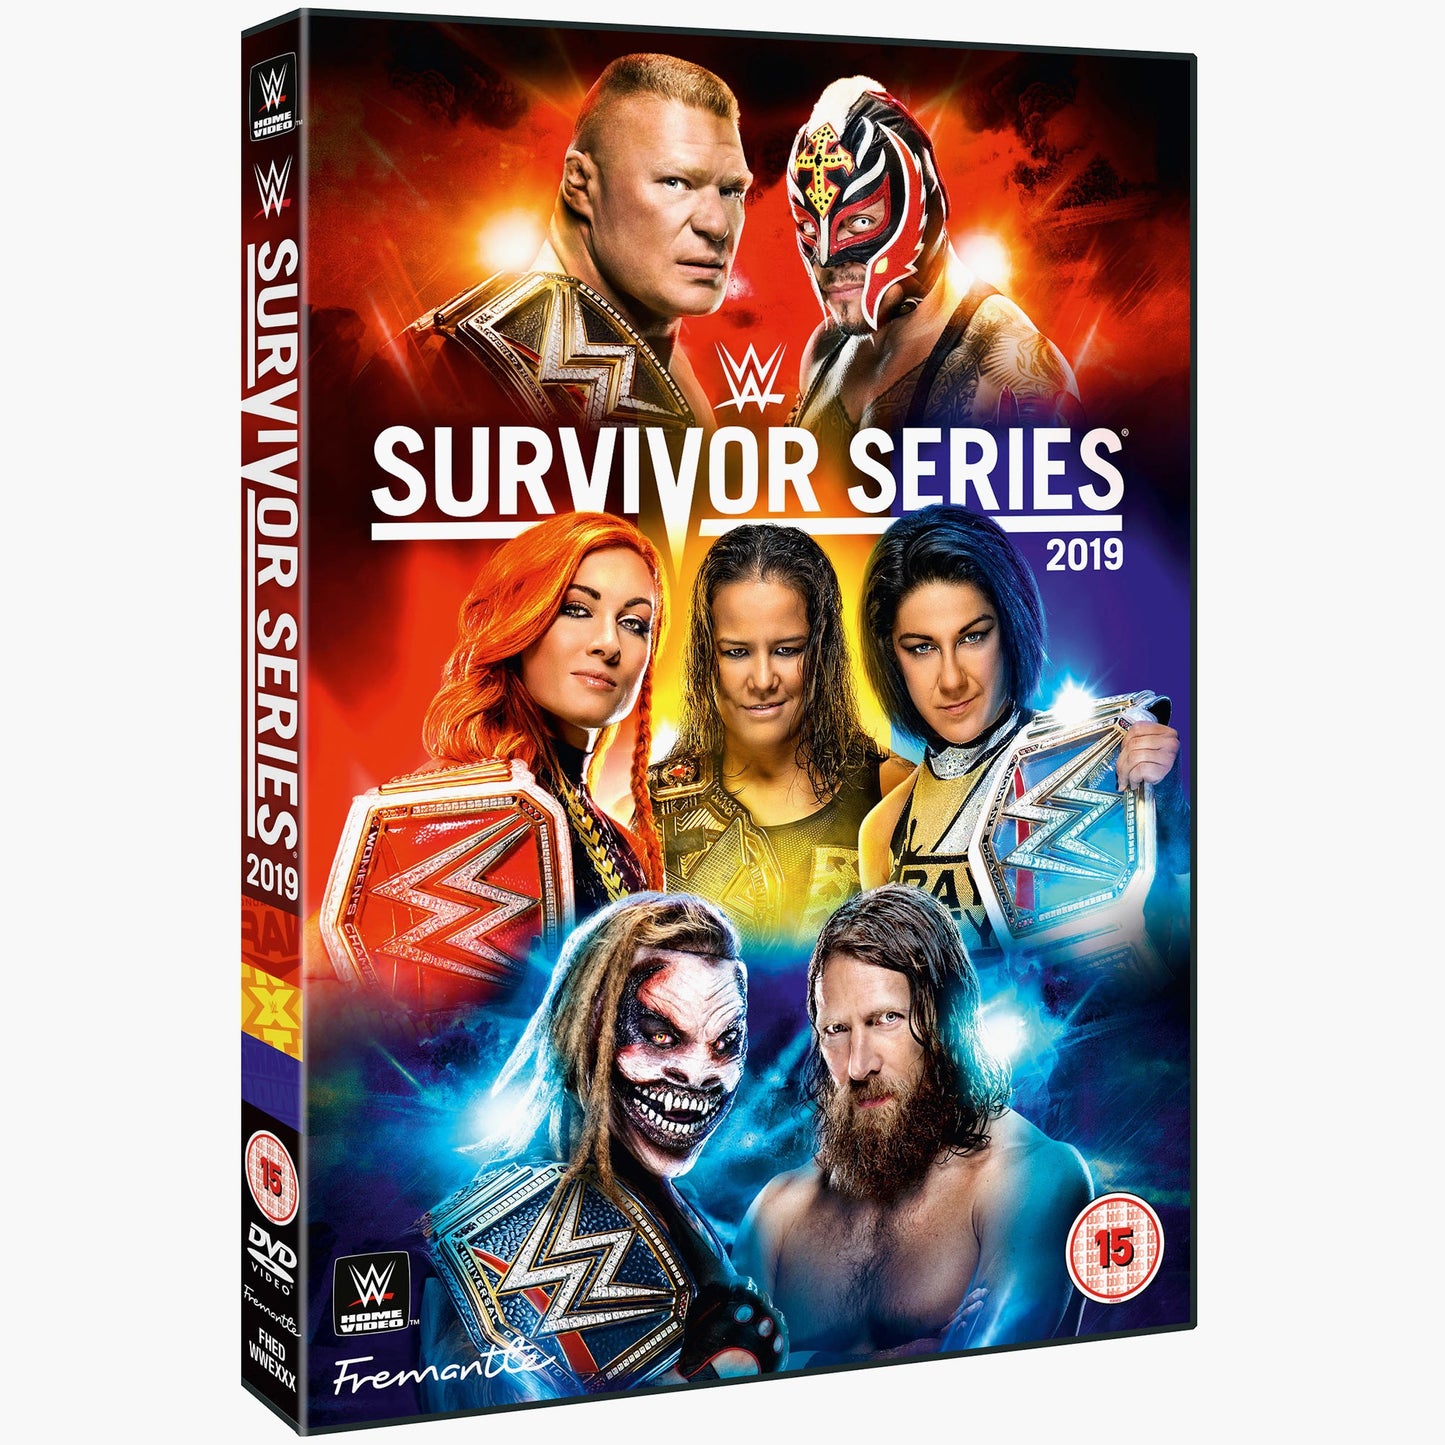 WWE Survivor Series 2019 DVD